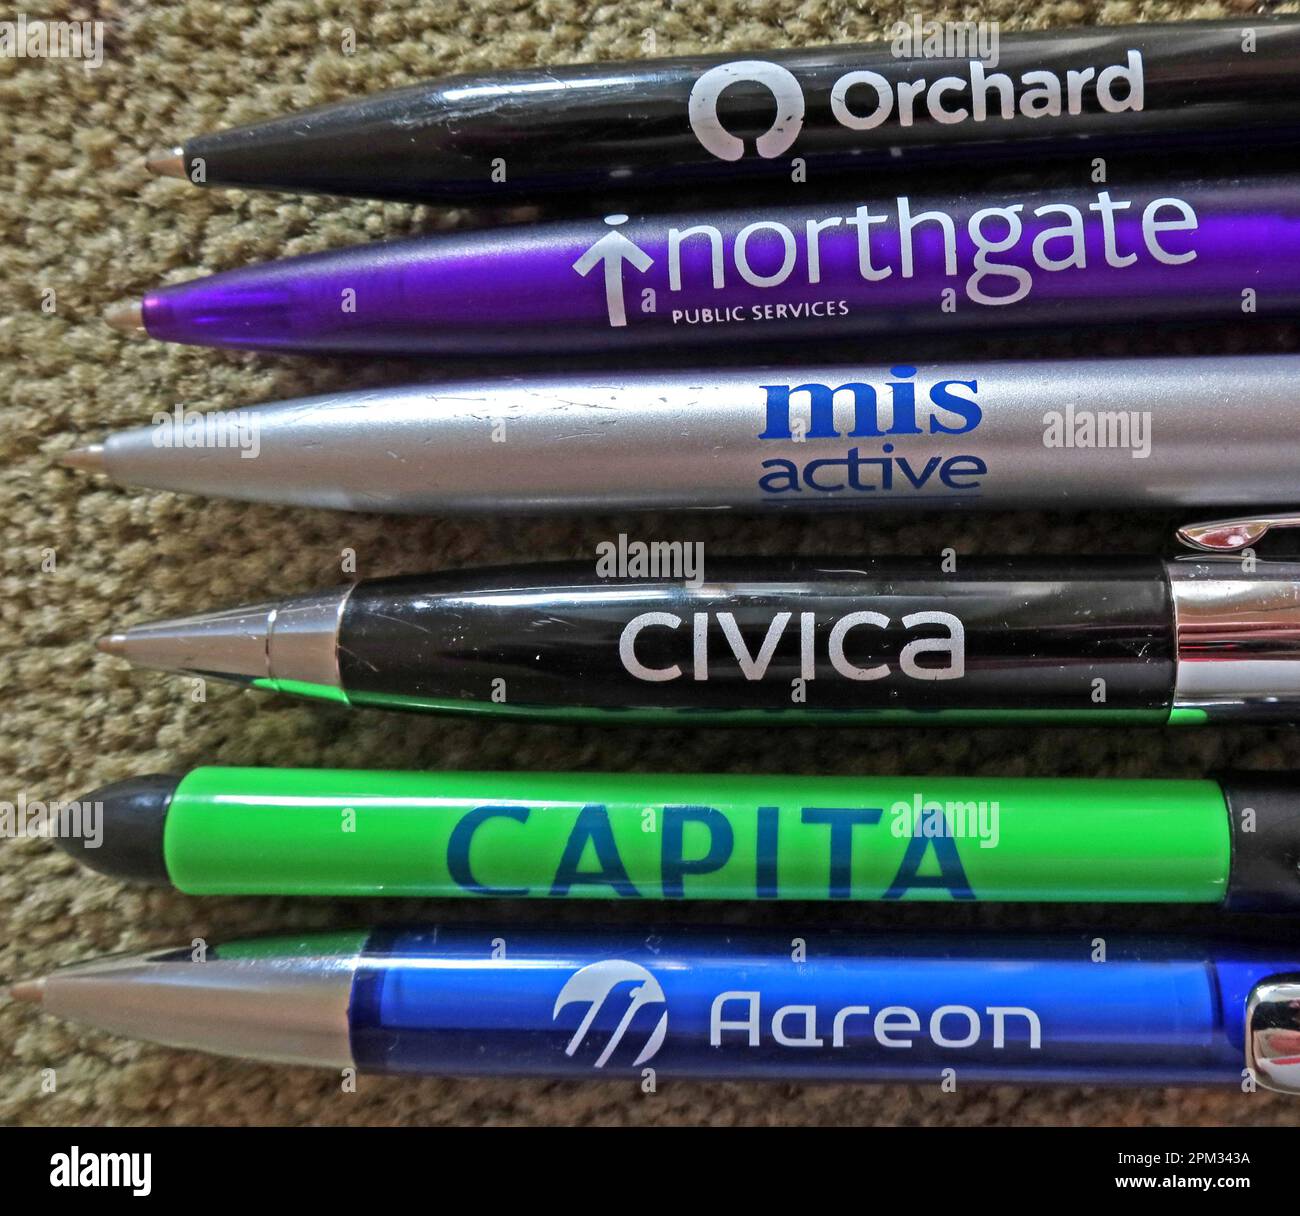 Des stylos gratuits provenant de fournisseurs de logiciels et d'applications HMS intégrés au Royaume-Uni et en Irlande - Aareon,capita, Civica, NEC, Northgate, MRI Banque D'Images